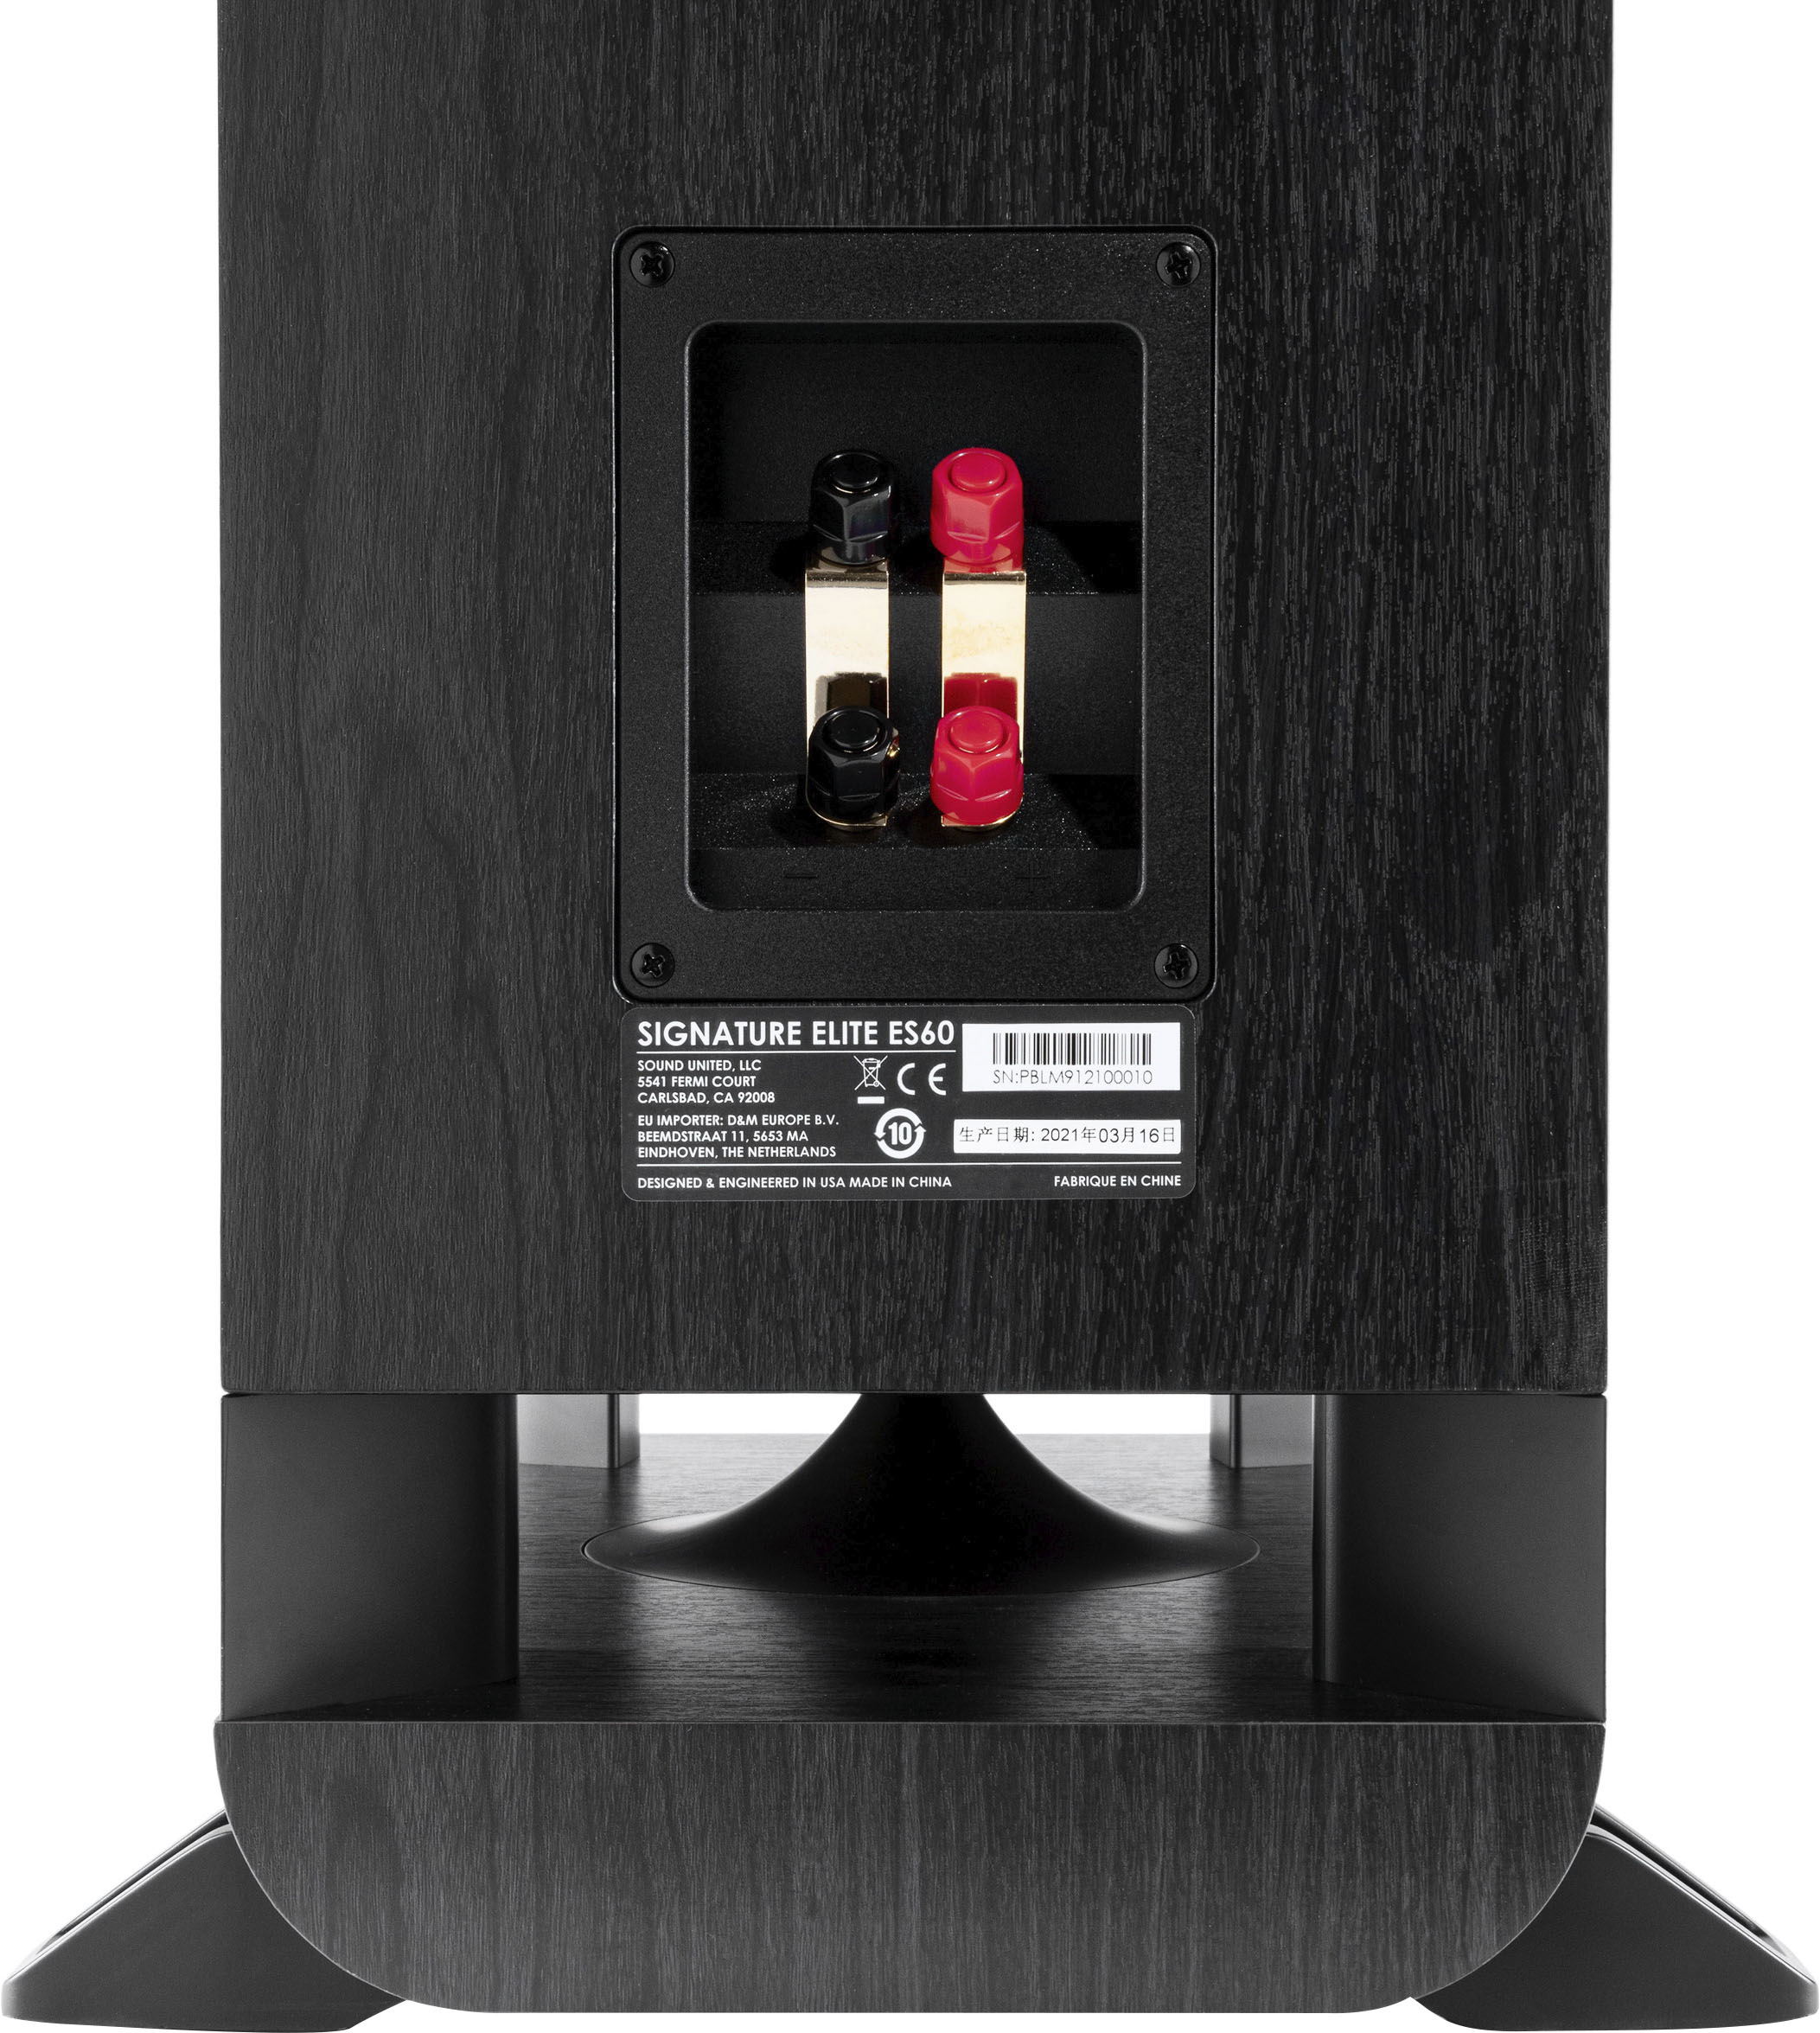 Best Buy: Polk Audio Signature Elite ES60 Hi-Res Tower Speaker